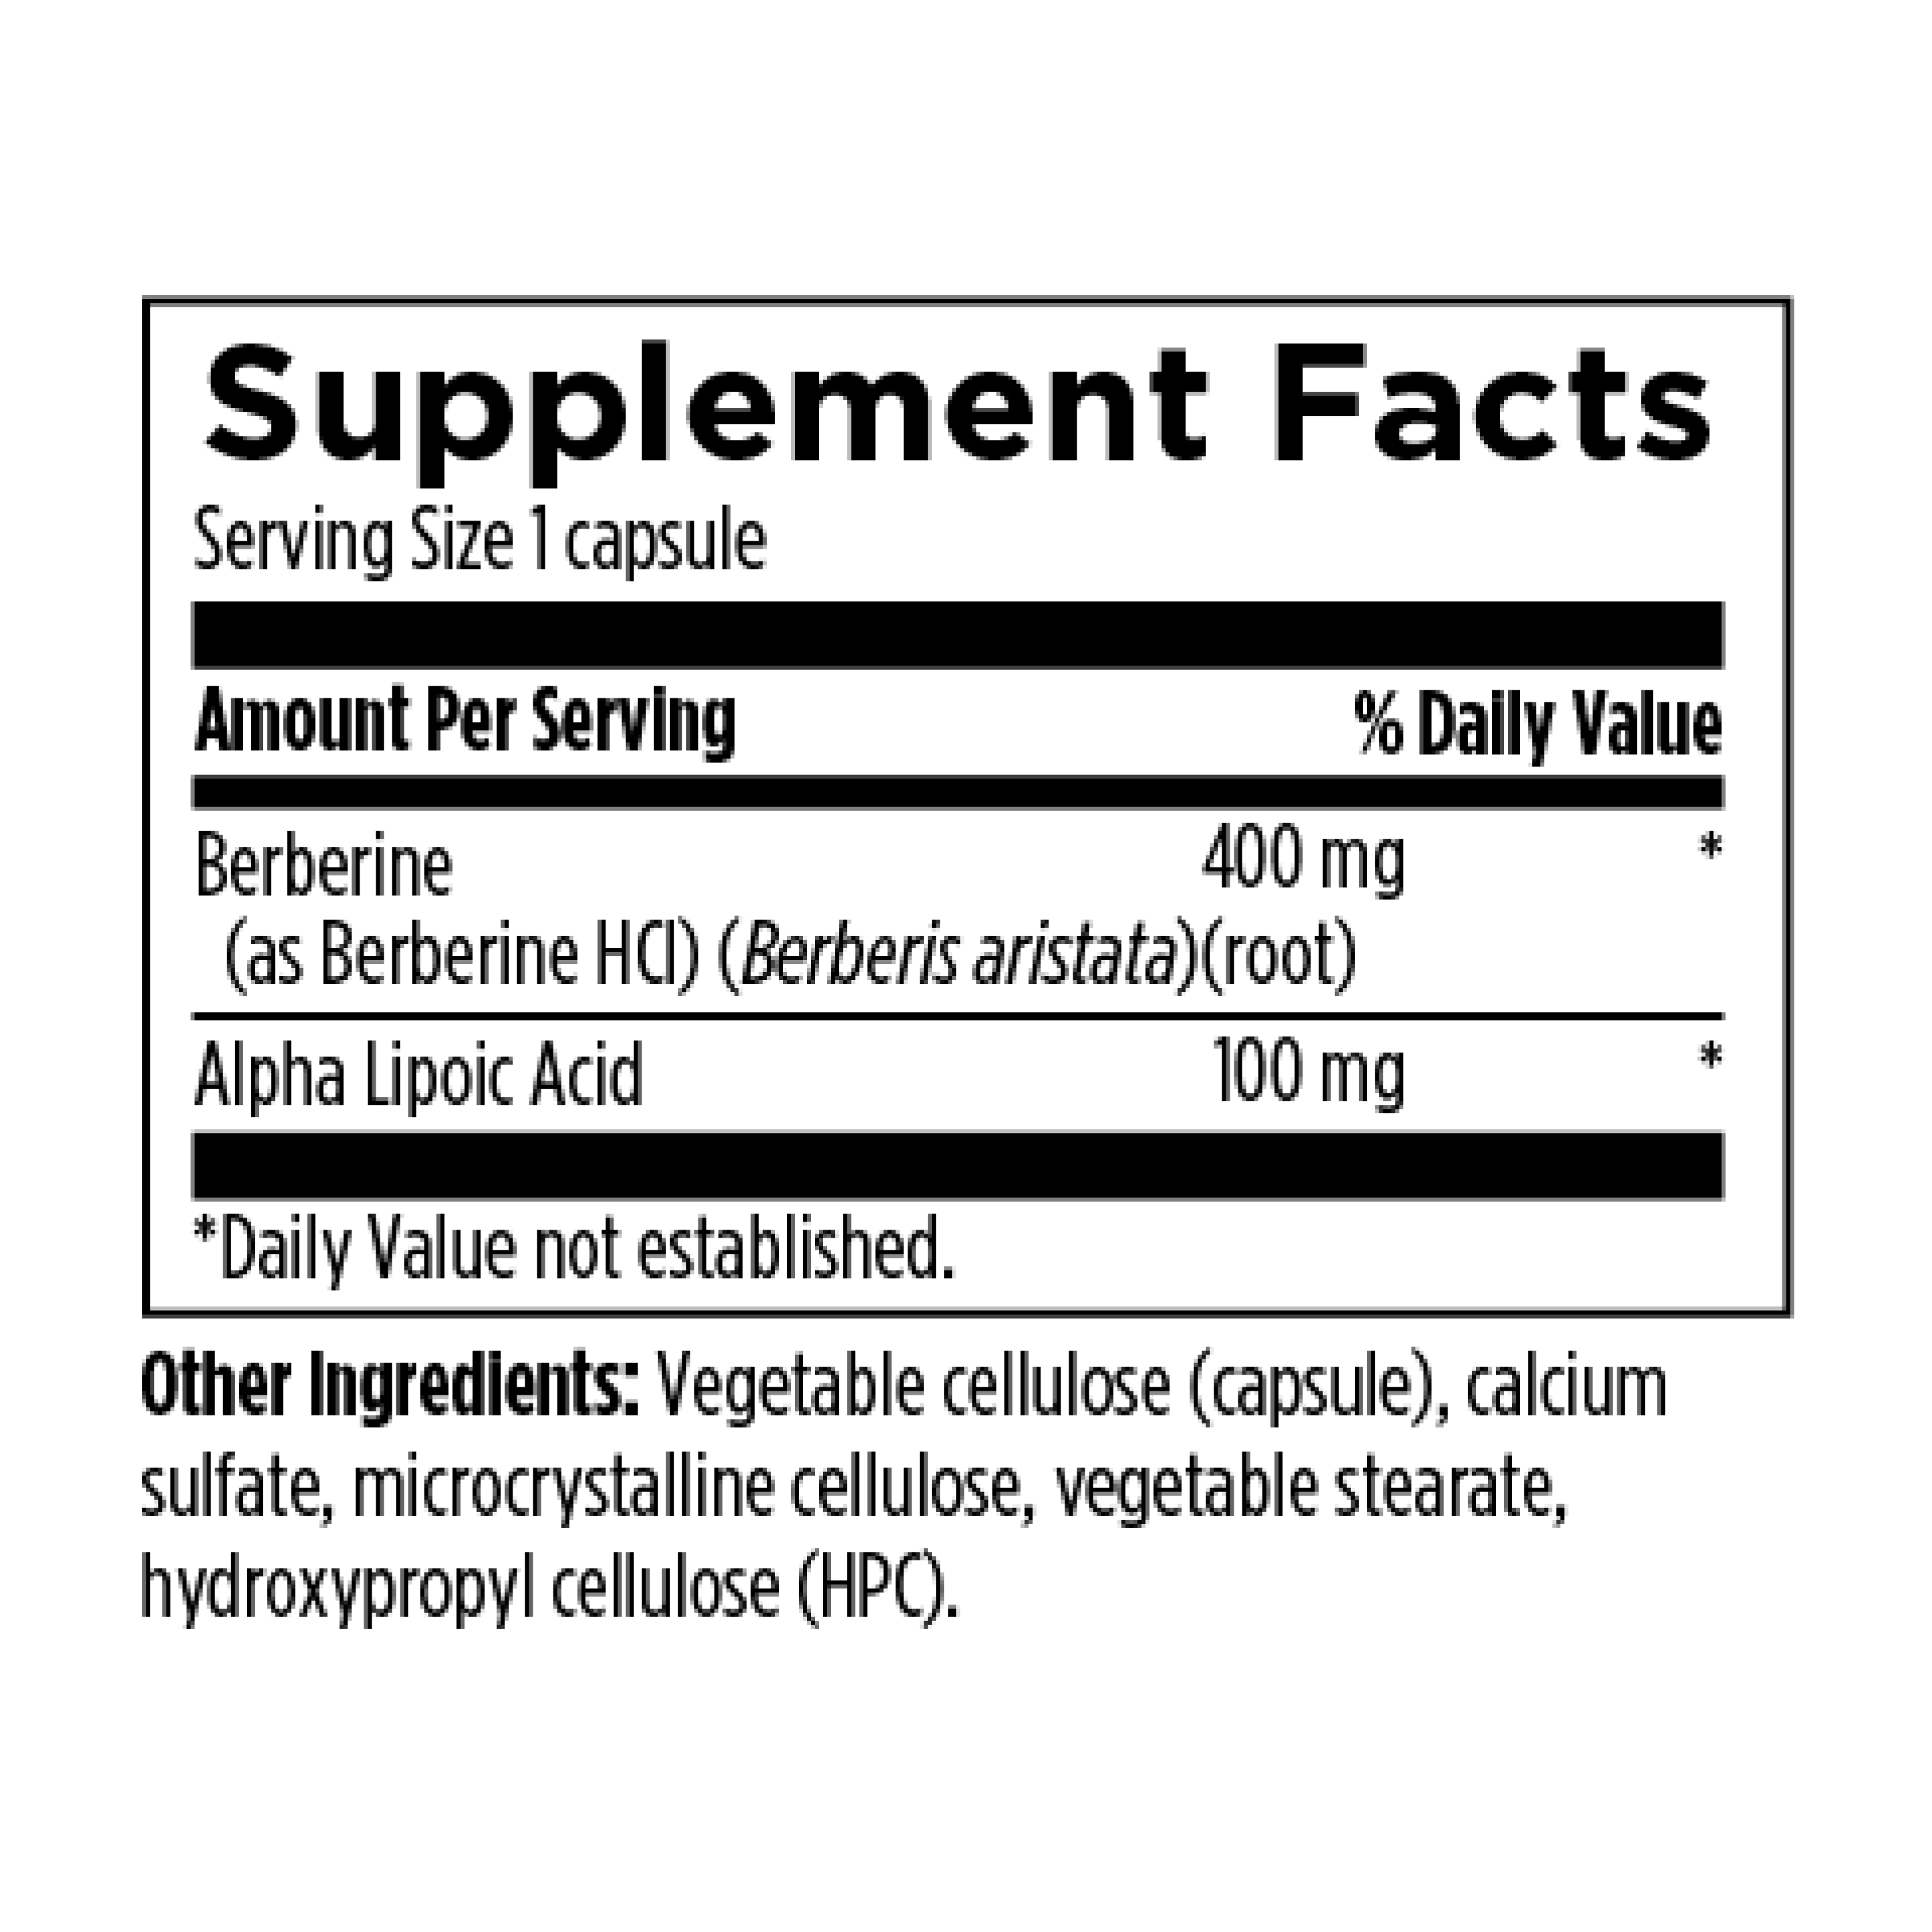 Berberine Synergy 400 mg + 100 mg ALA